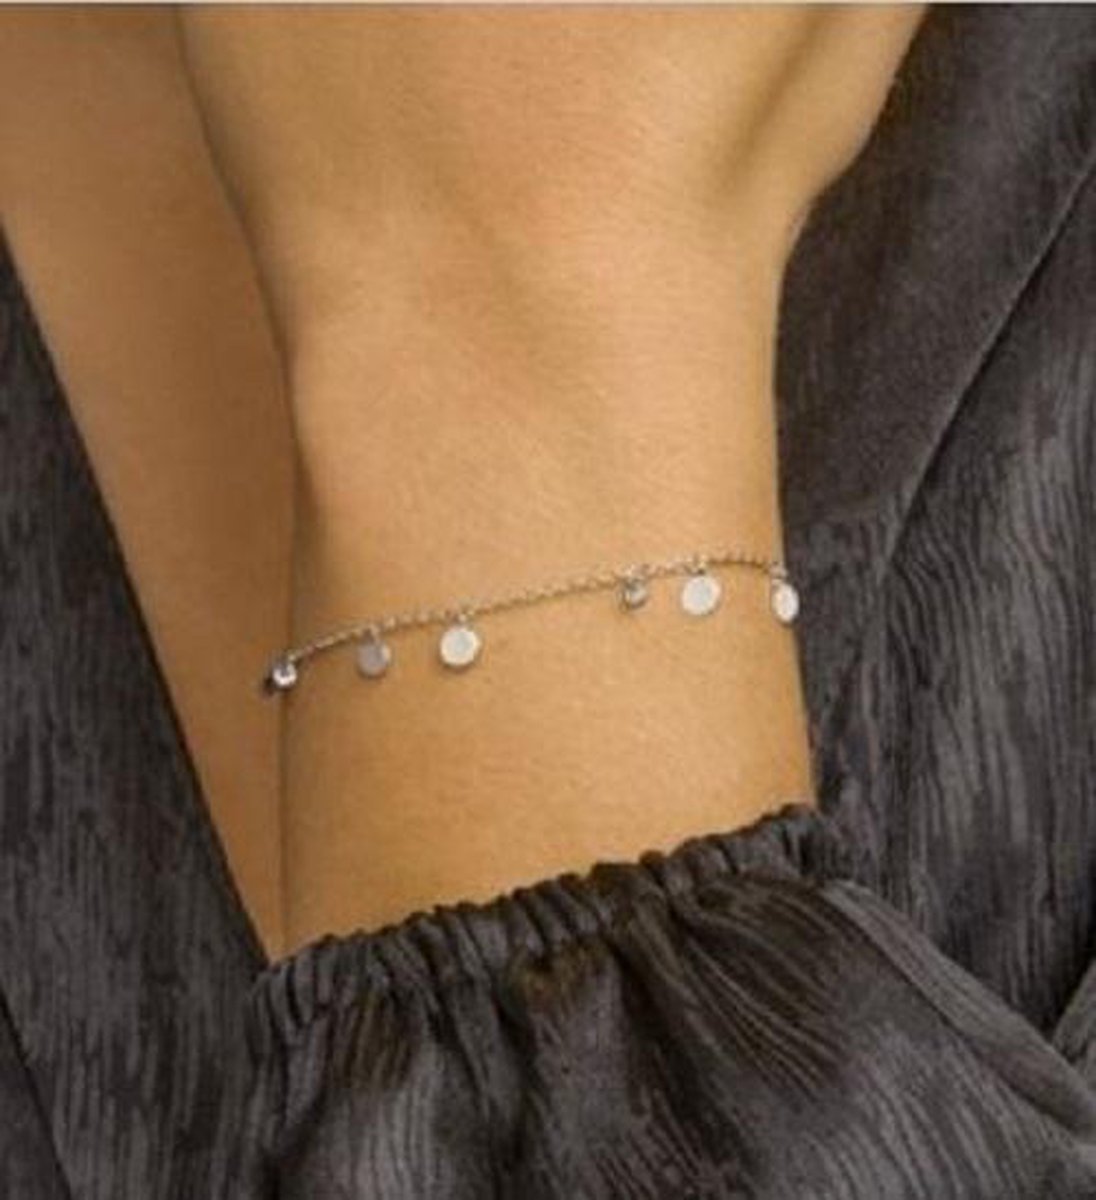 Schitterende Zilveren Armband met Zirkonia Steentjes | bol.com